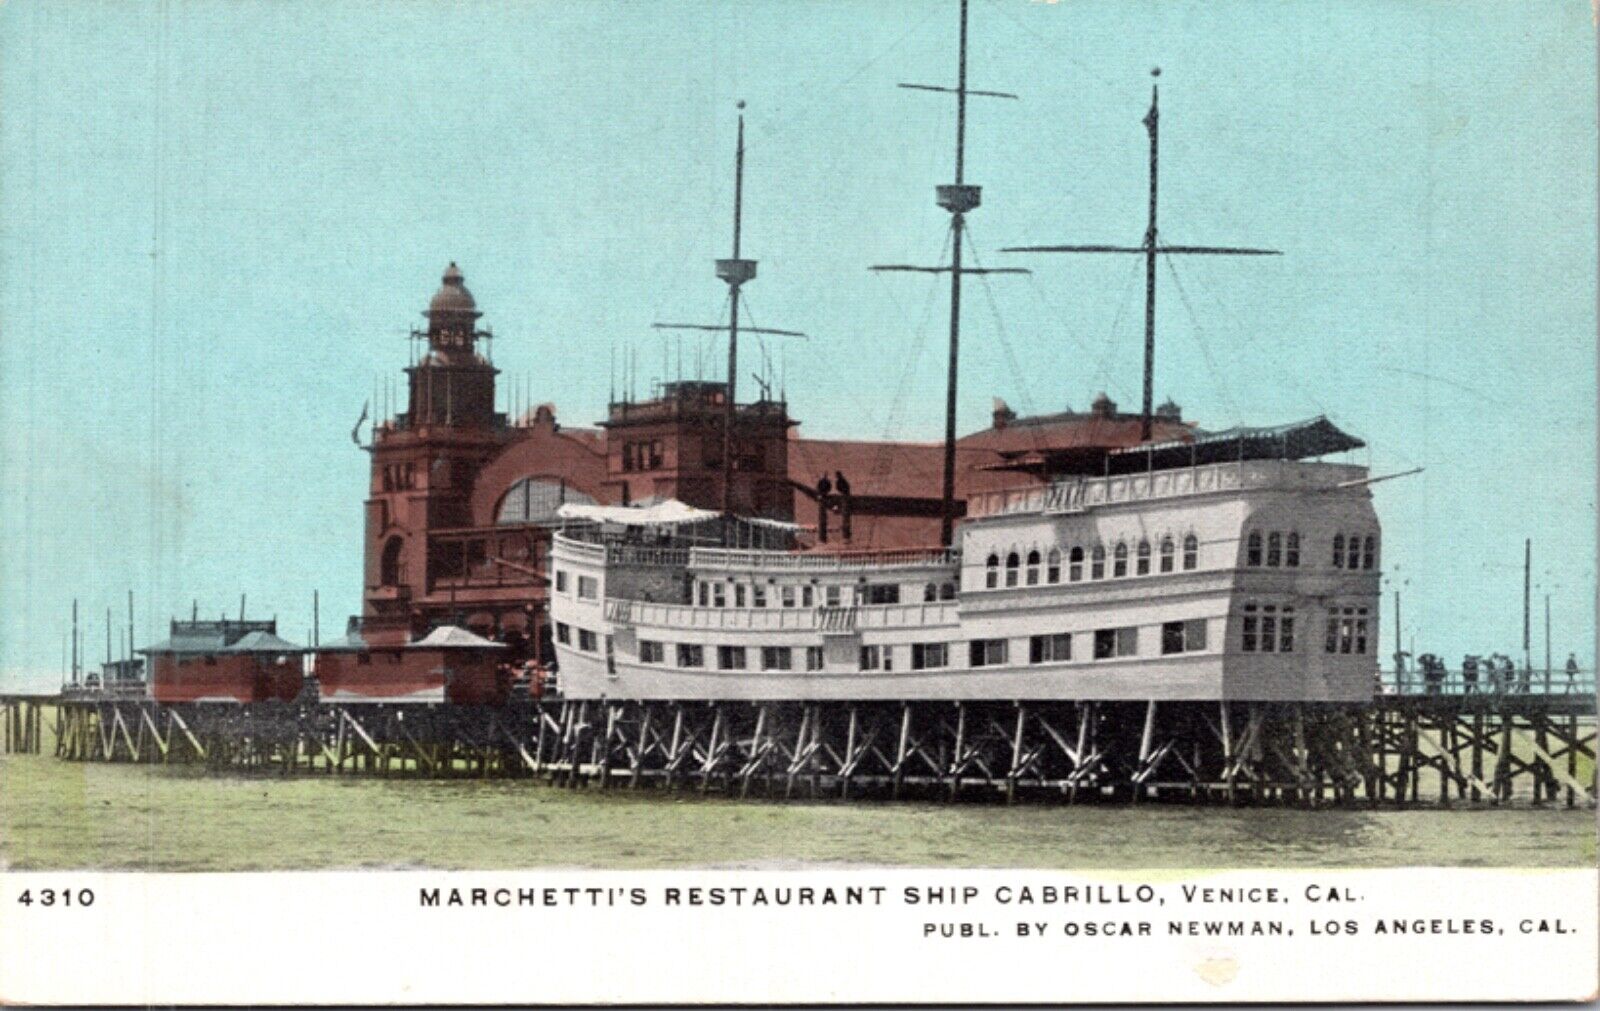 Postcard Marchetti's Restaurant Ship Cabrillo in Venice, California